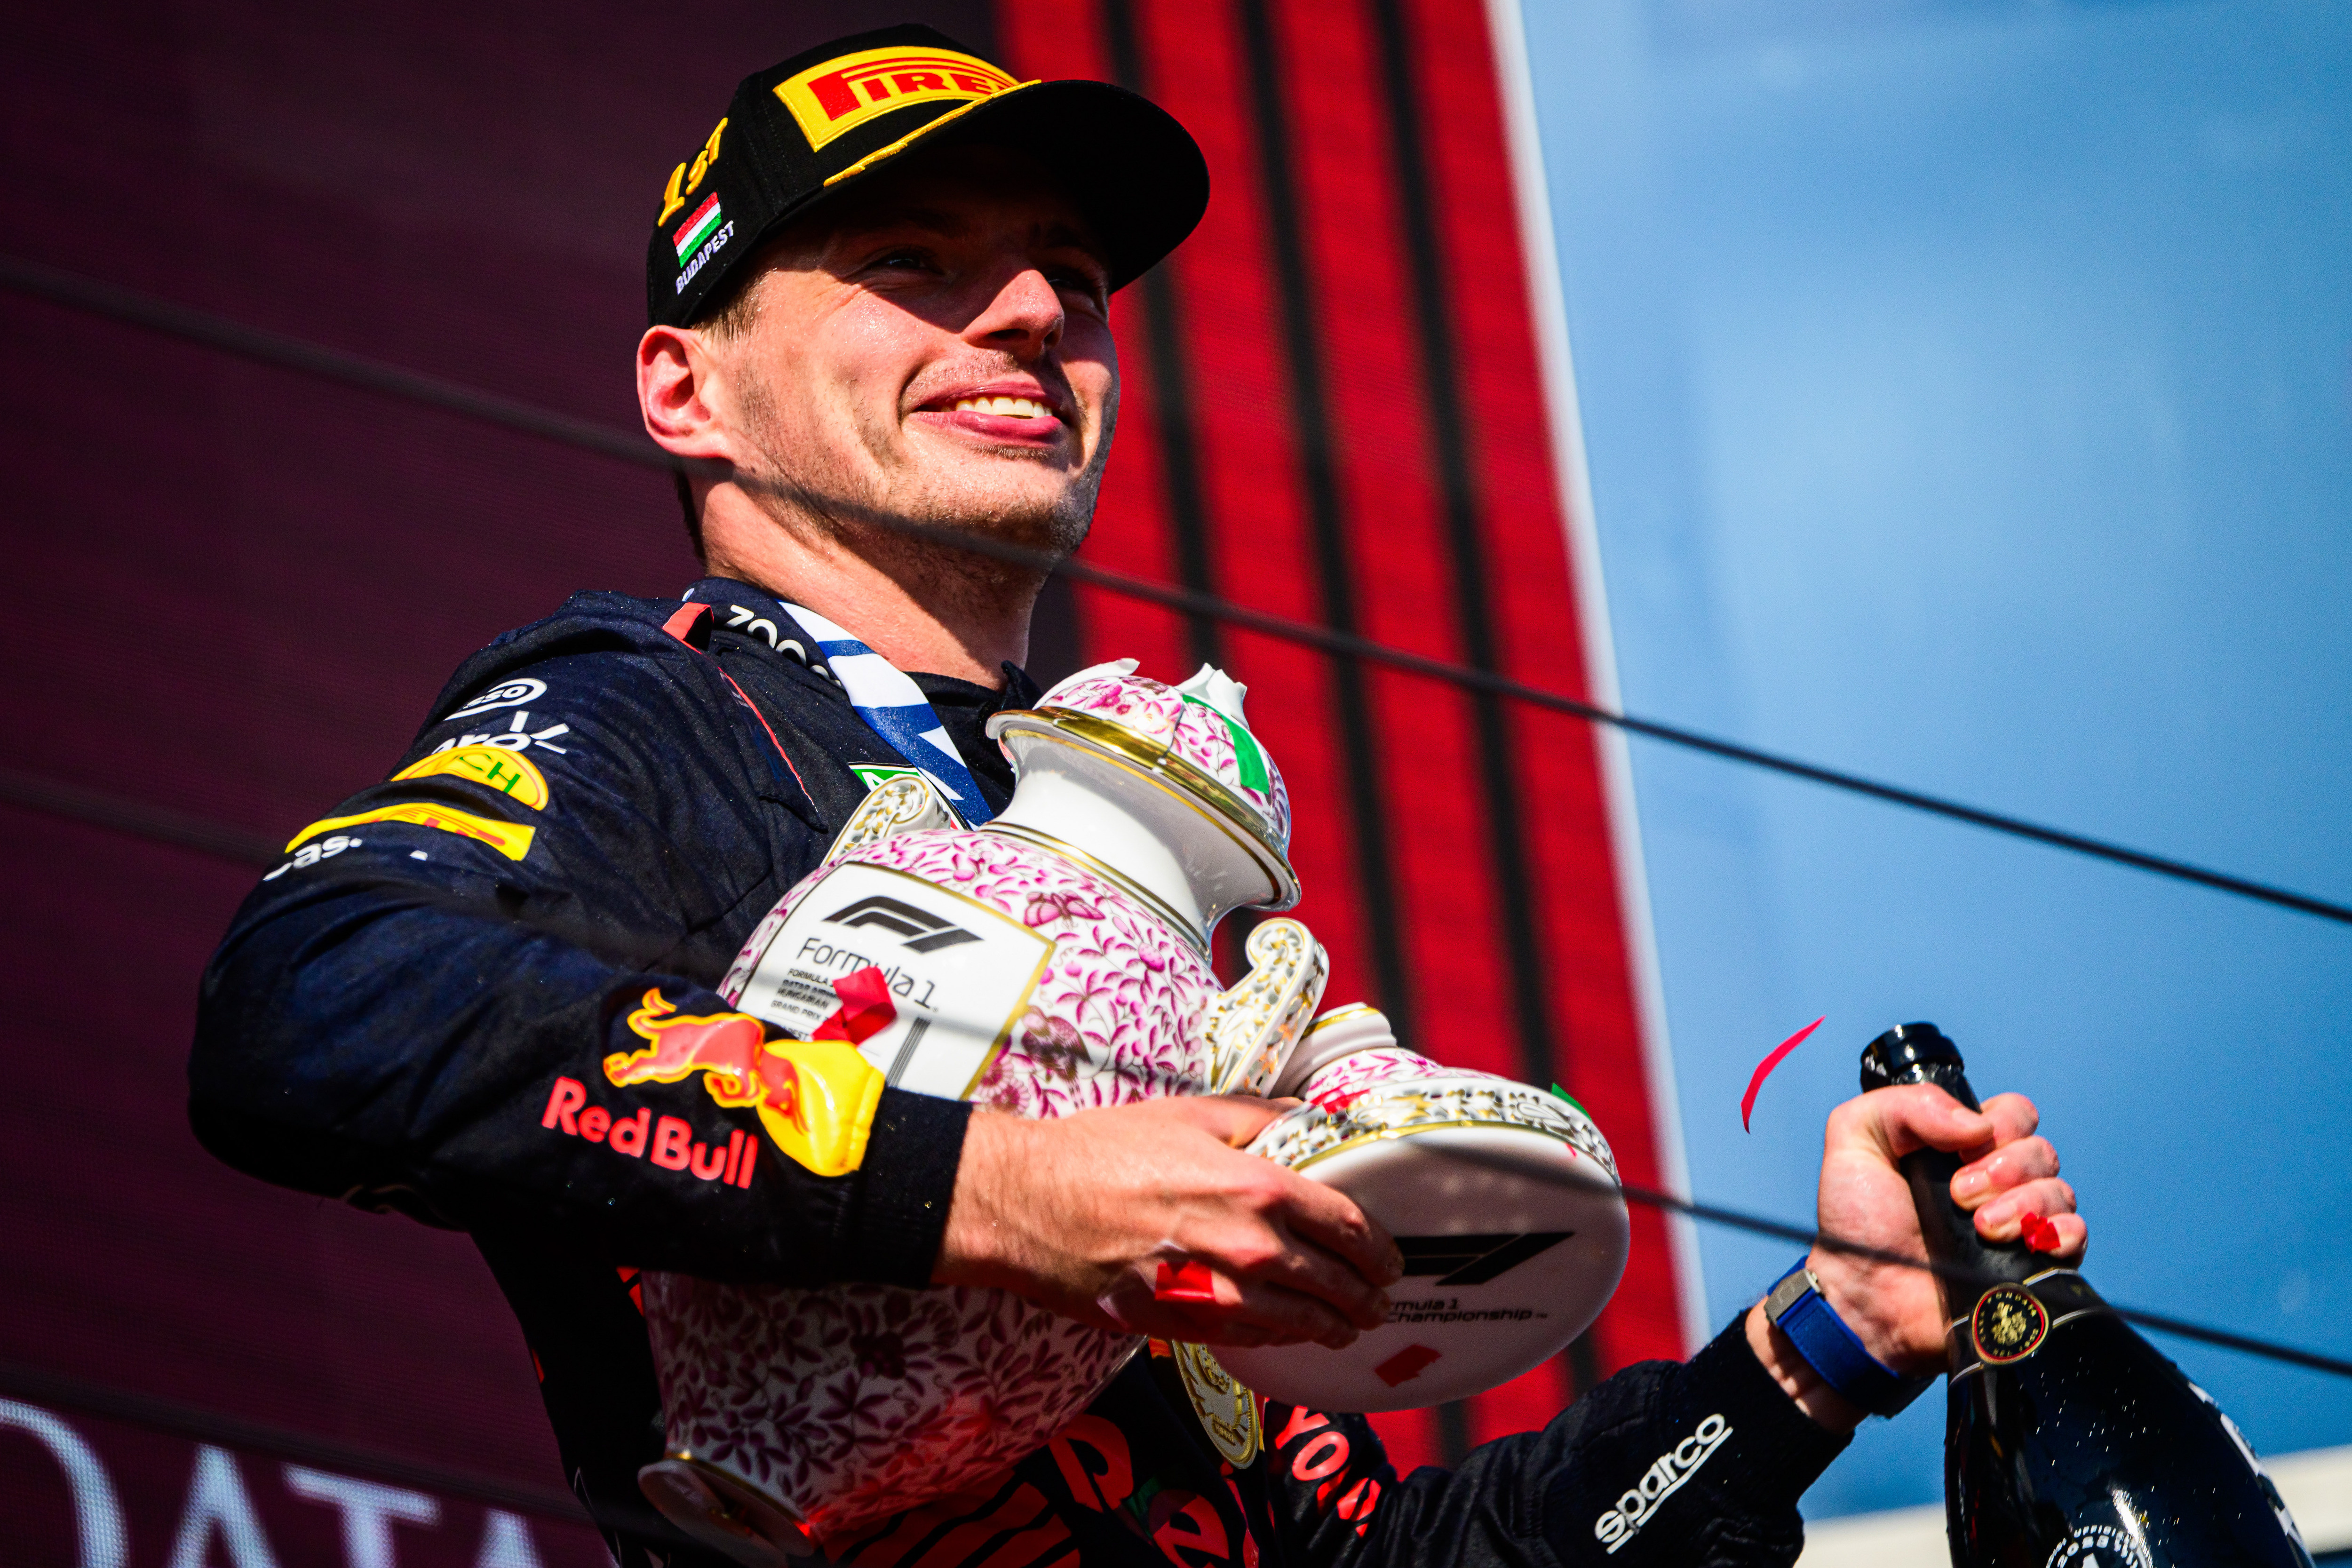 Max Verstappen, az Oracle Red Bull Racing holland pilótája a dobogón reagál, miután megnyerte az F1-es Magyar Nagydíj futamát a Budapest melletti Hungaroringen.